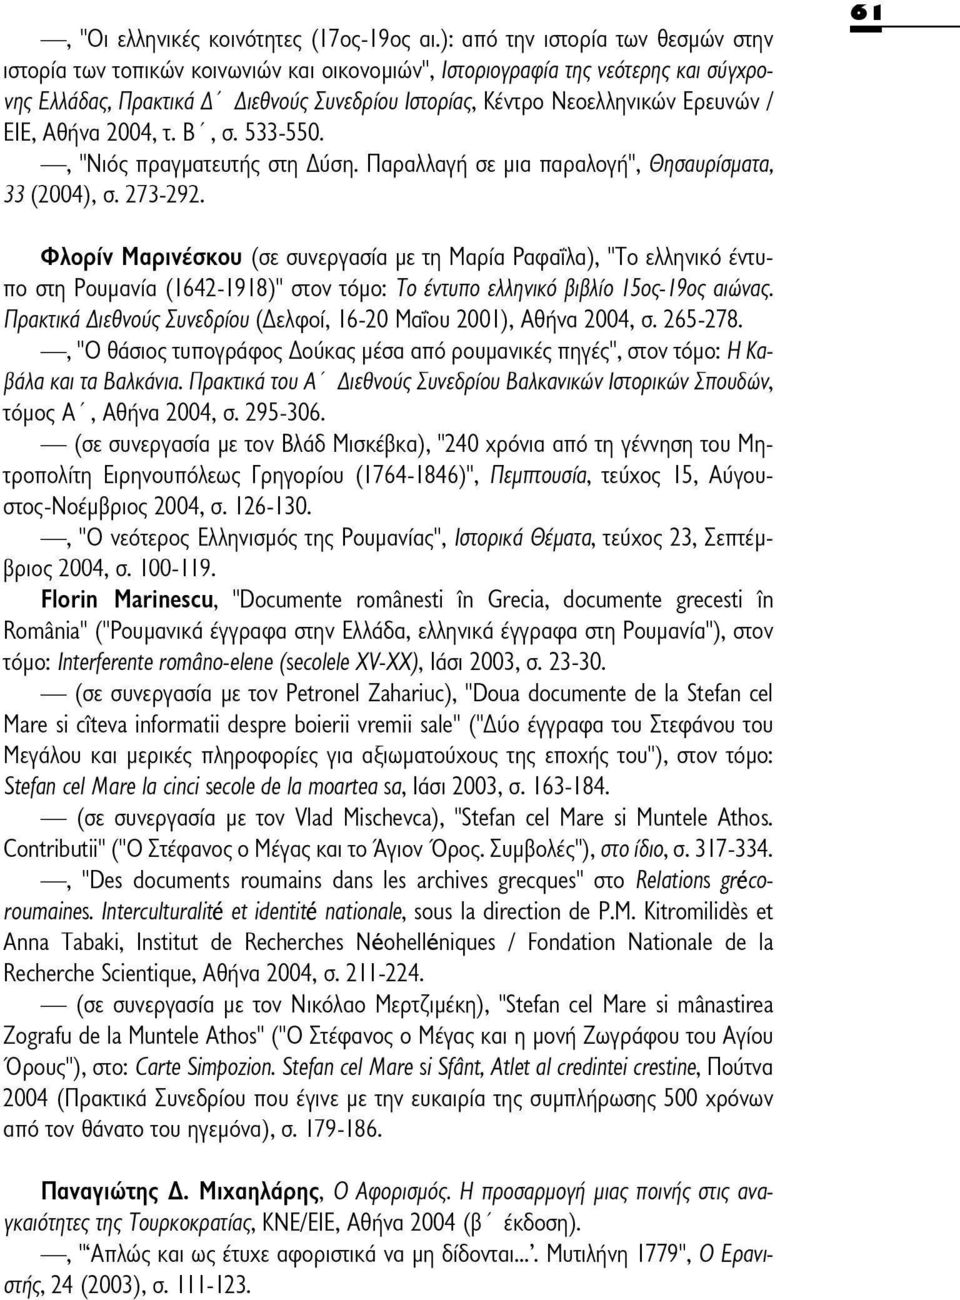 Ερευνών / EIE,Αθήνα 2004,τ. Β',σ. 533-550., "Νιος πραγματευτής στη Δύση. Παραλλαγή σε μια παραλογή", Θησαυρίσματα, 33 (2004), σ. 273-292.